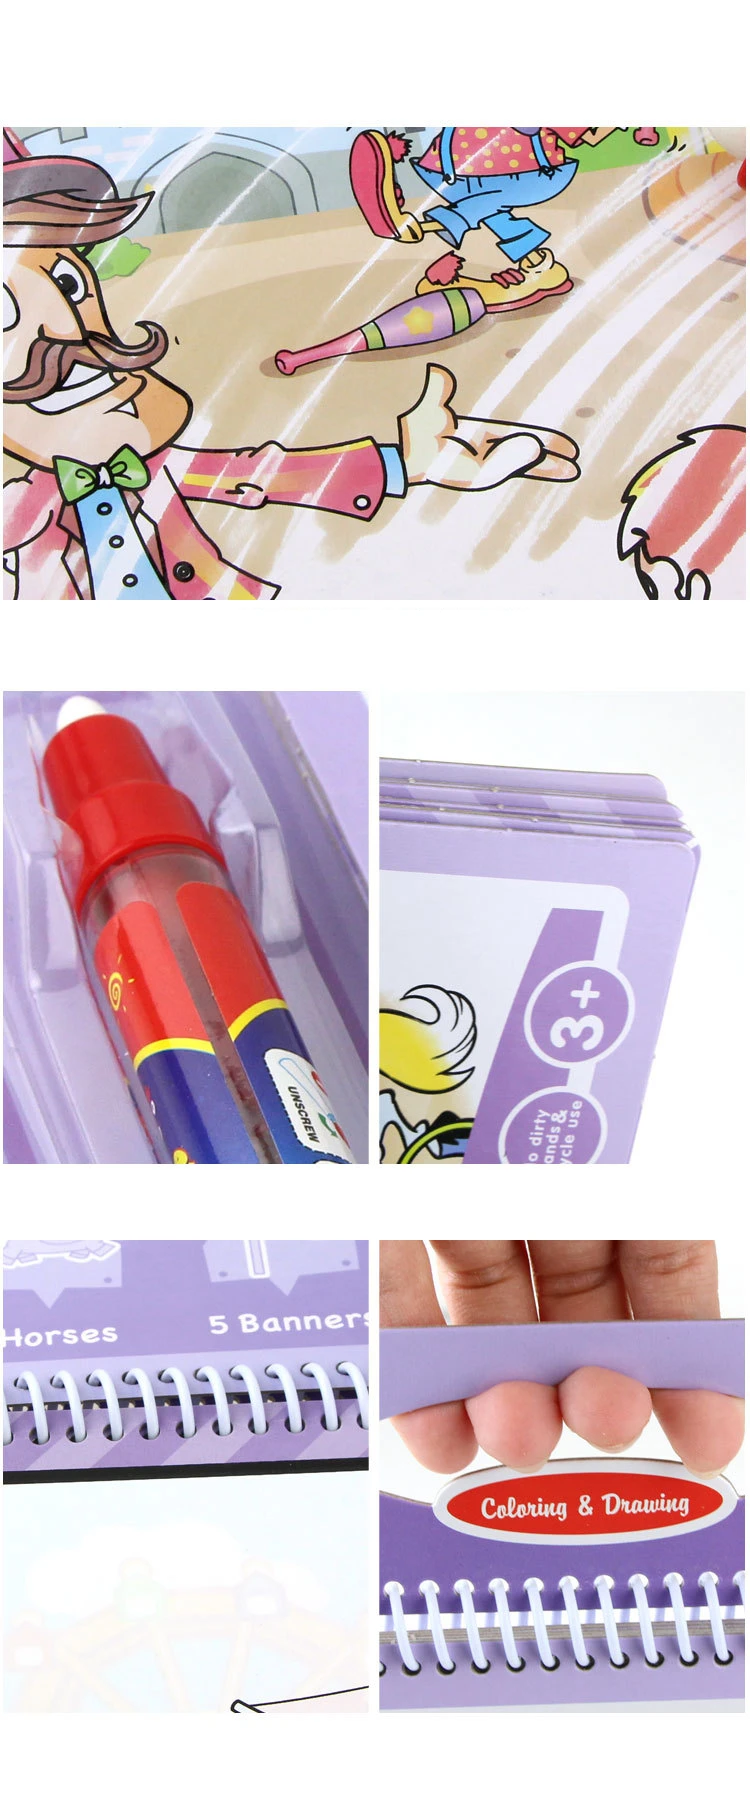 8 цветов дизайна волшебное обесцвечивание воды Рисование книга игрушки набор танбук с волшебной ручкой учебное Рисование доска подарок для детей